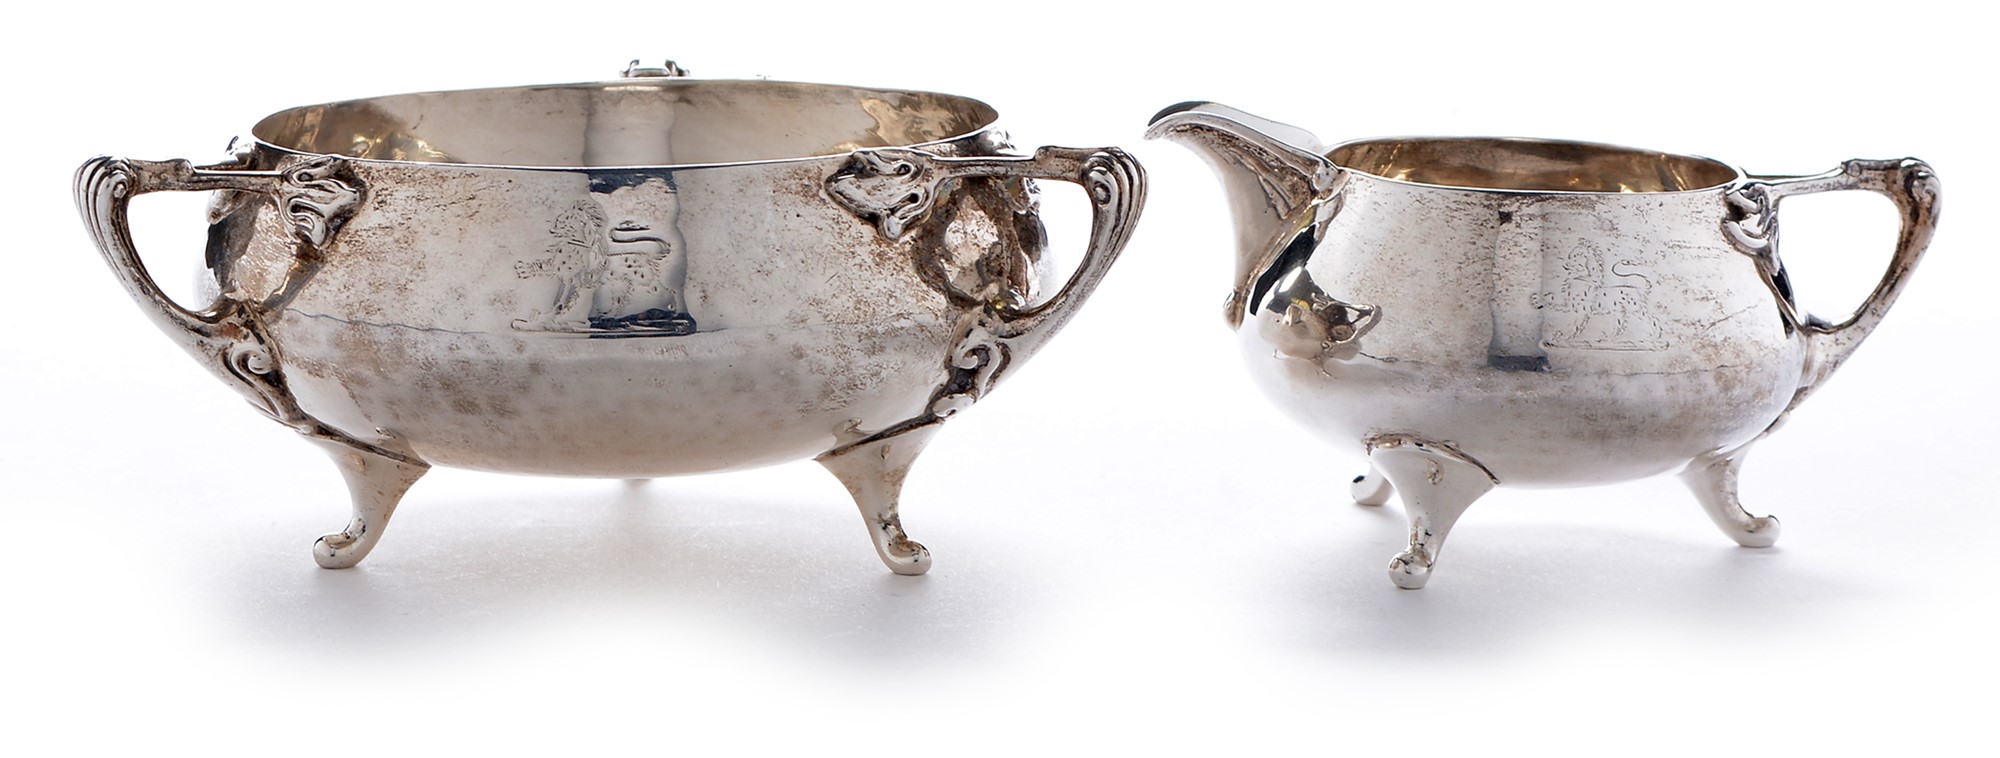 Arts and Crafts silver jug and bowl